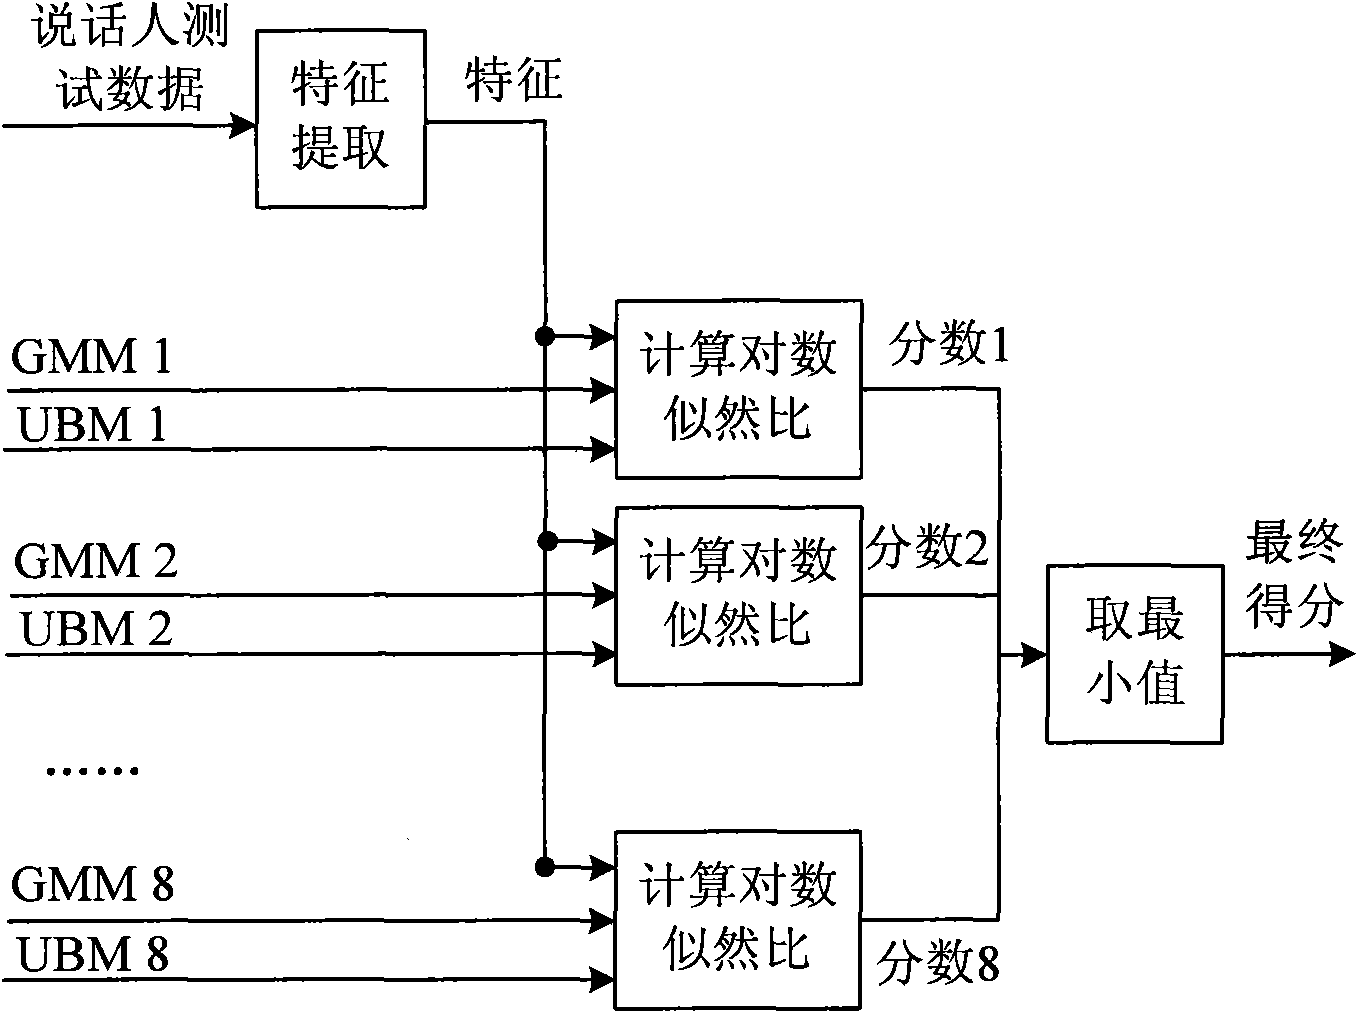 Multi-background modeling method for speaker recognition